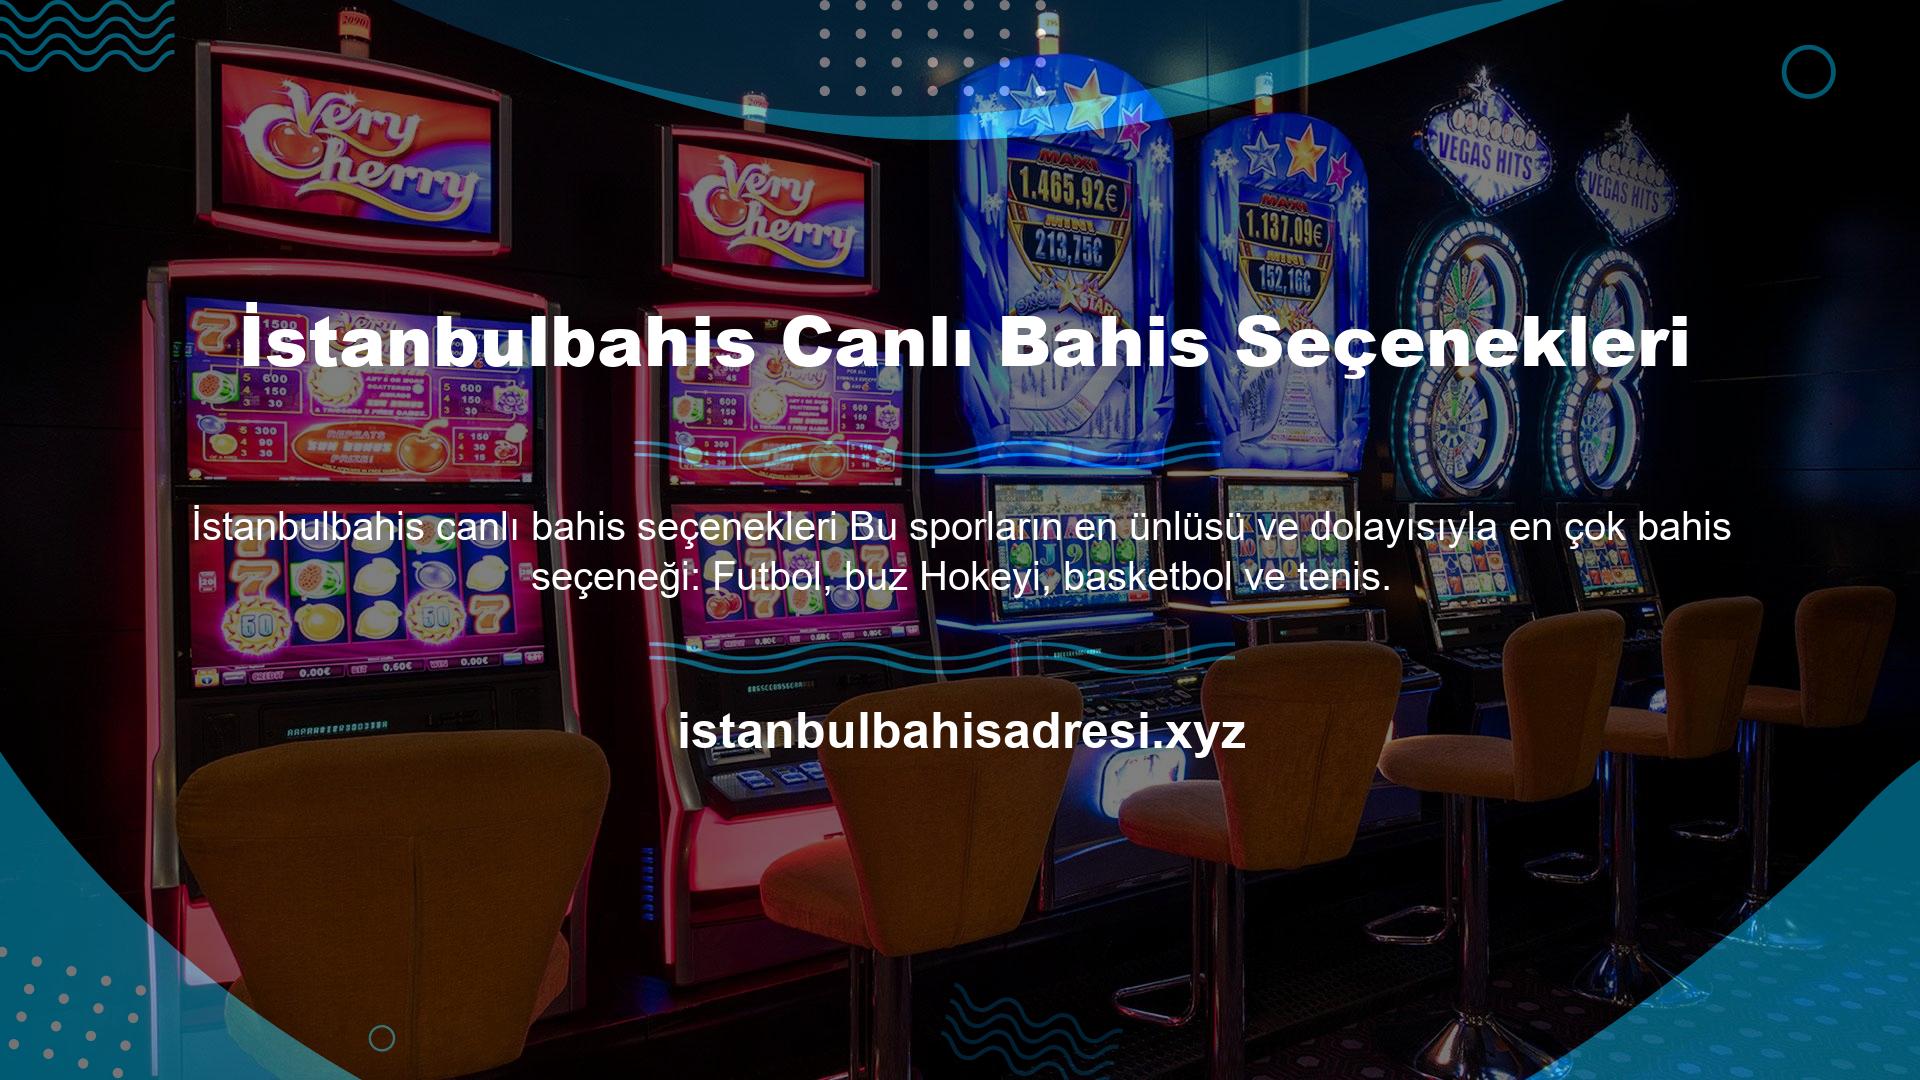 İstanbulbahis spor bahisleri sekmesinde kolayca kontrol edebilirsiniz